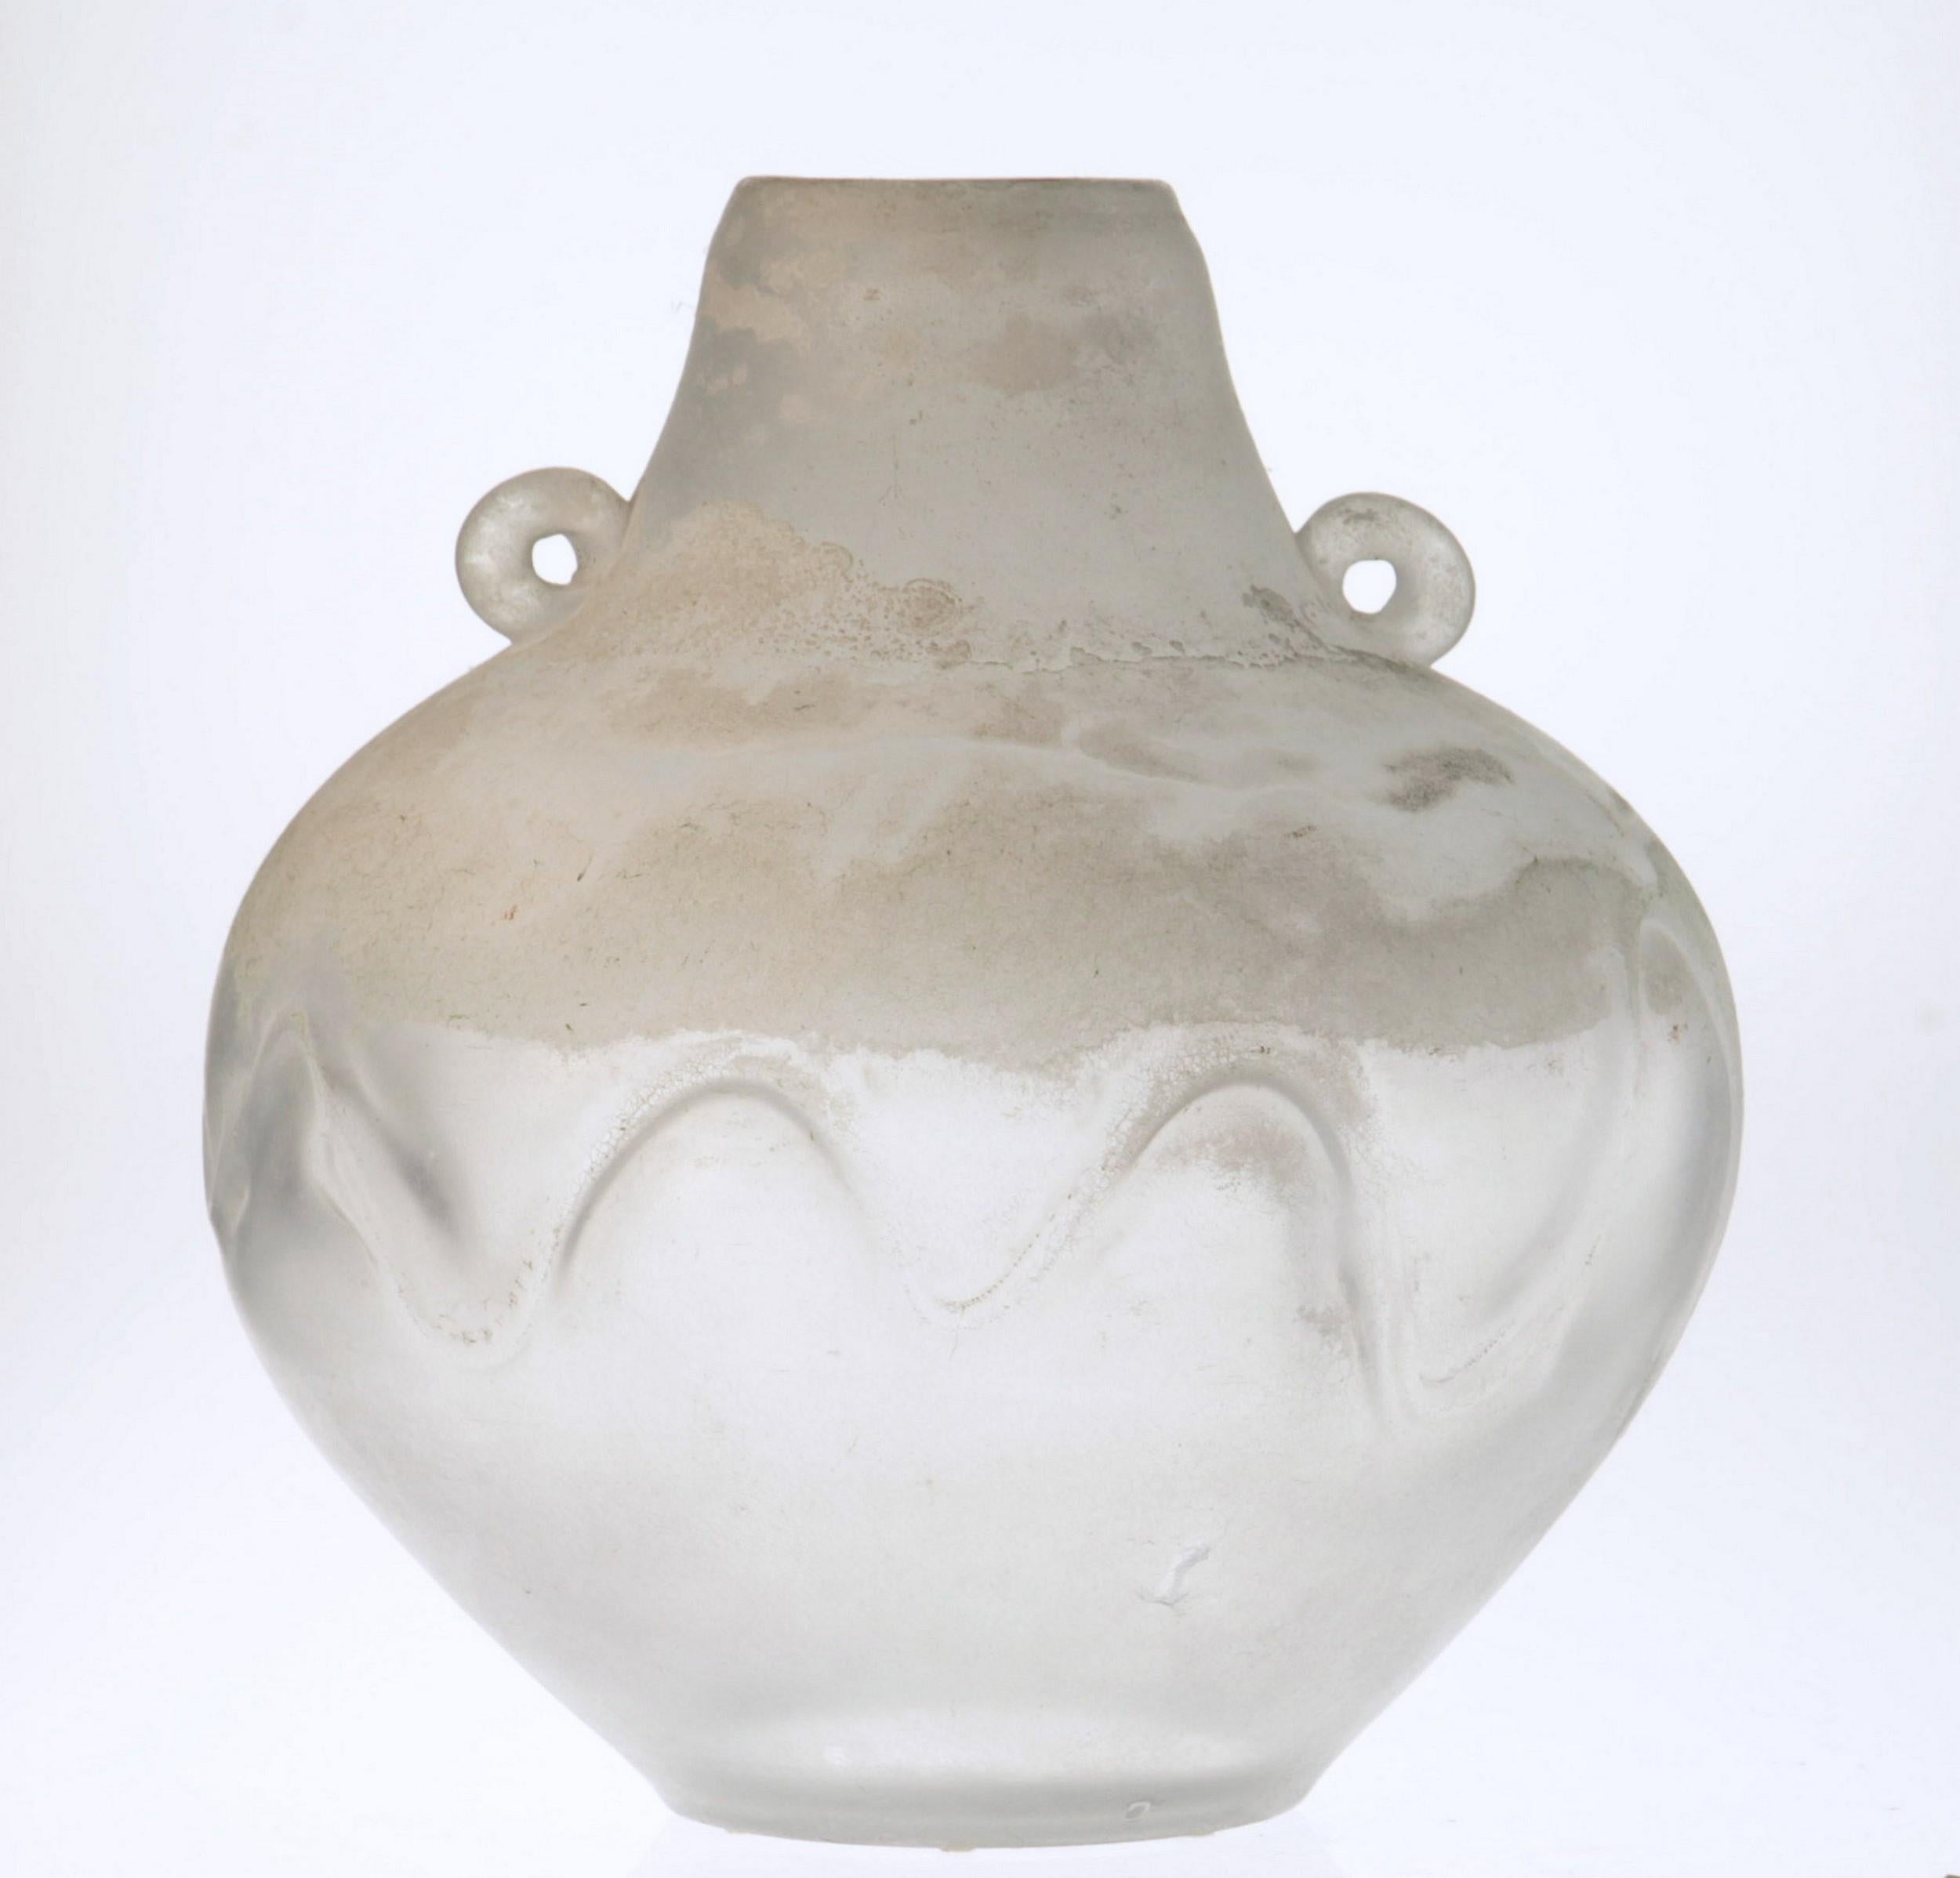 Grand vase scavo unique. Bisazza a utilisé ici un thème qui était populaire à la fin des années 1980, l'art amérindien. En particulier la poterie Navaho.

Le scavo est fabriqué en utilisant une technique de scavo qui consiste à ajouter des